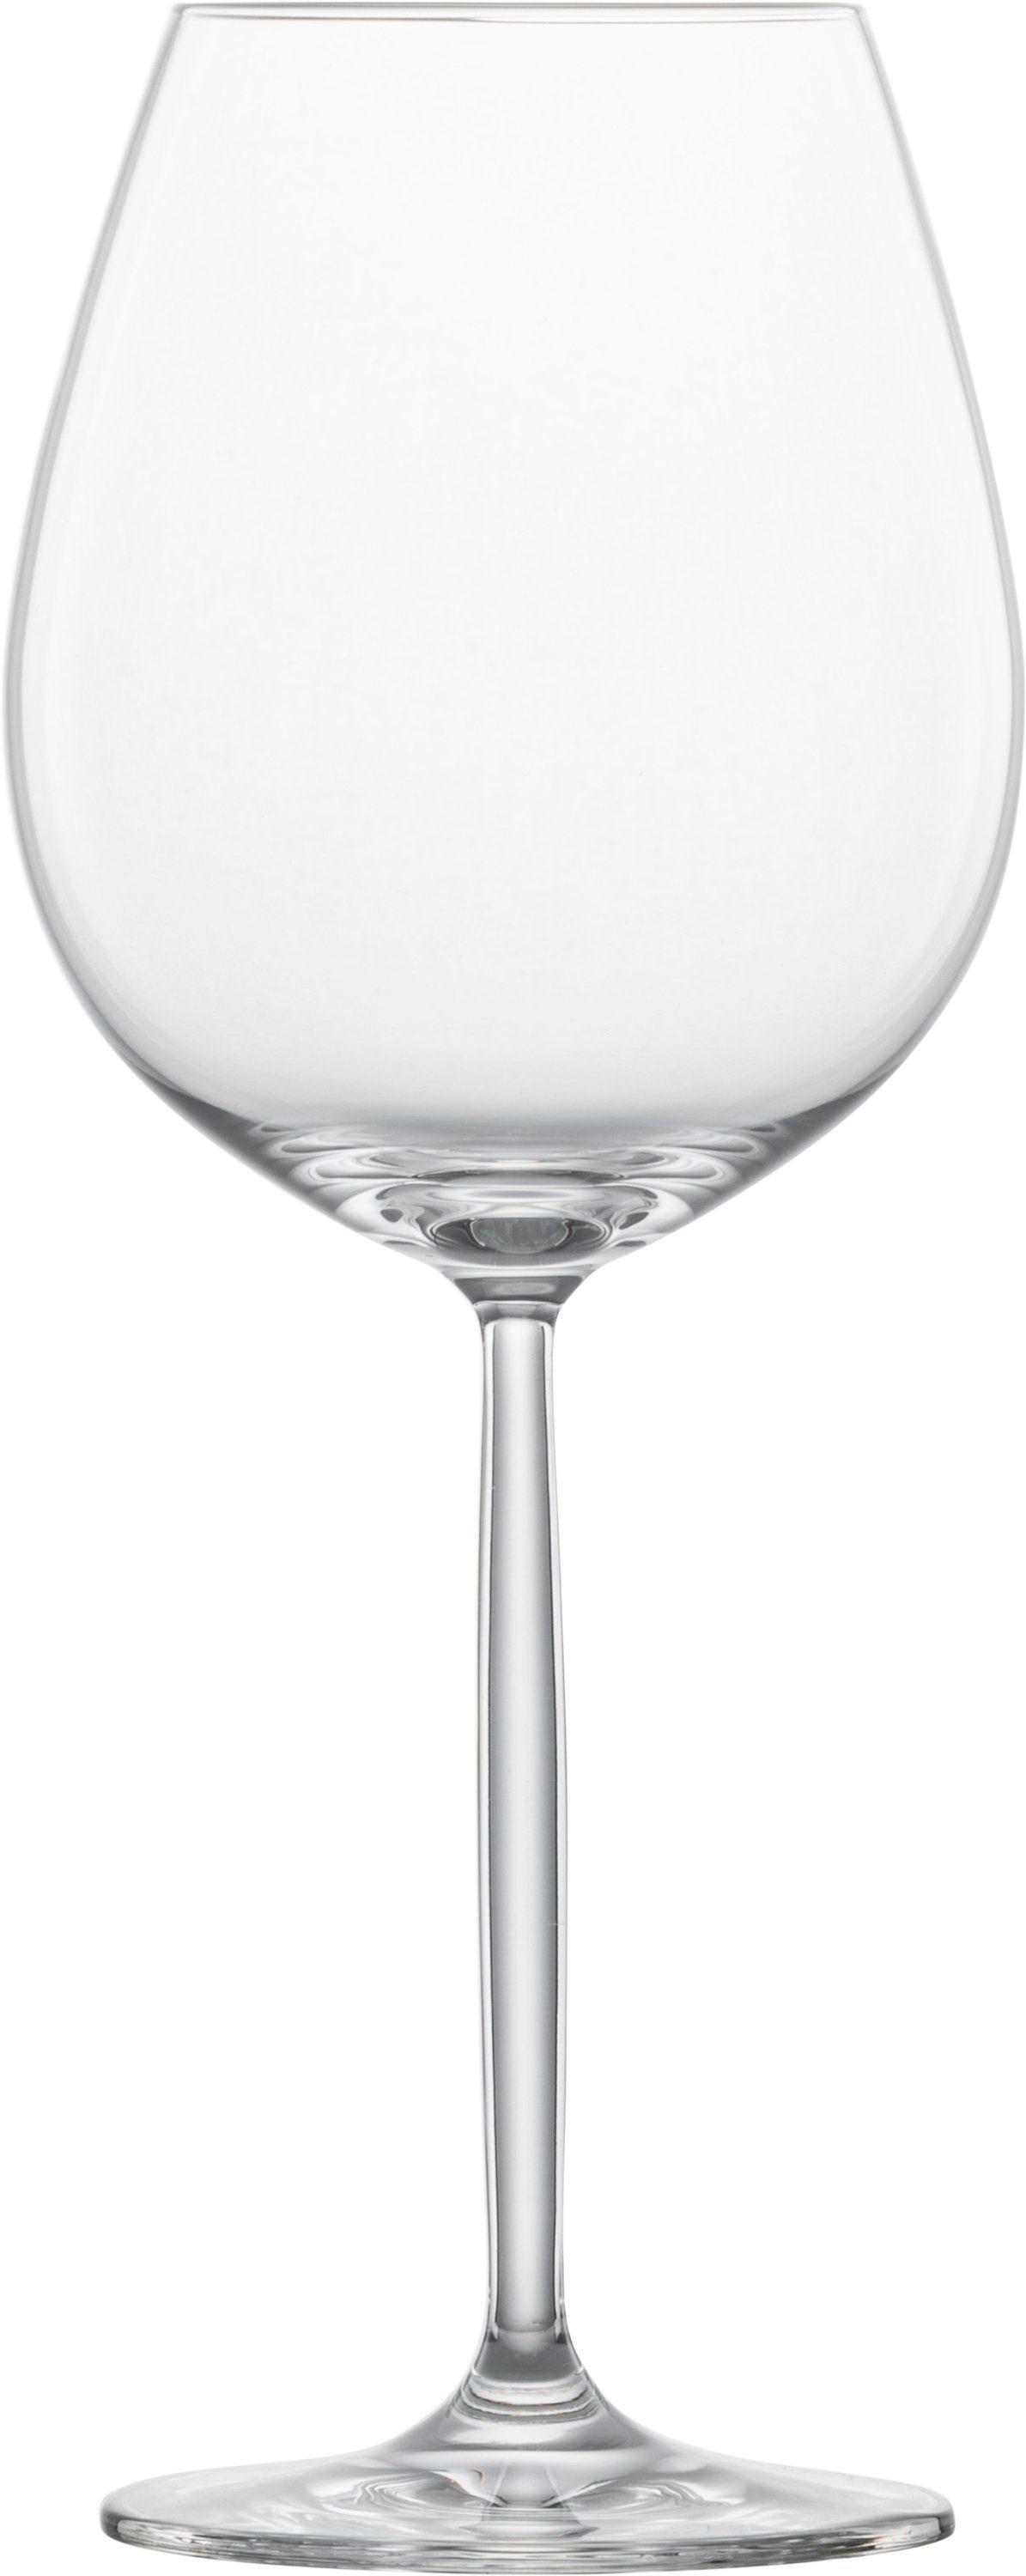 Zwiesel Glas SCHOTT-ZWIESEL Weinglas Diva Wasser/Rotwein 104096 6er Set, Glas